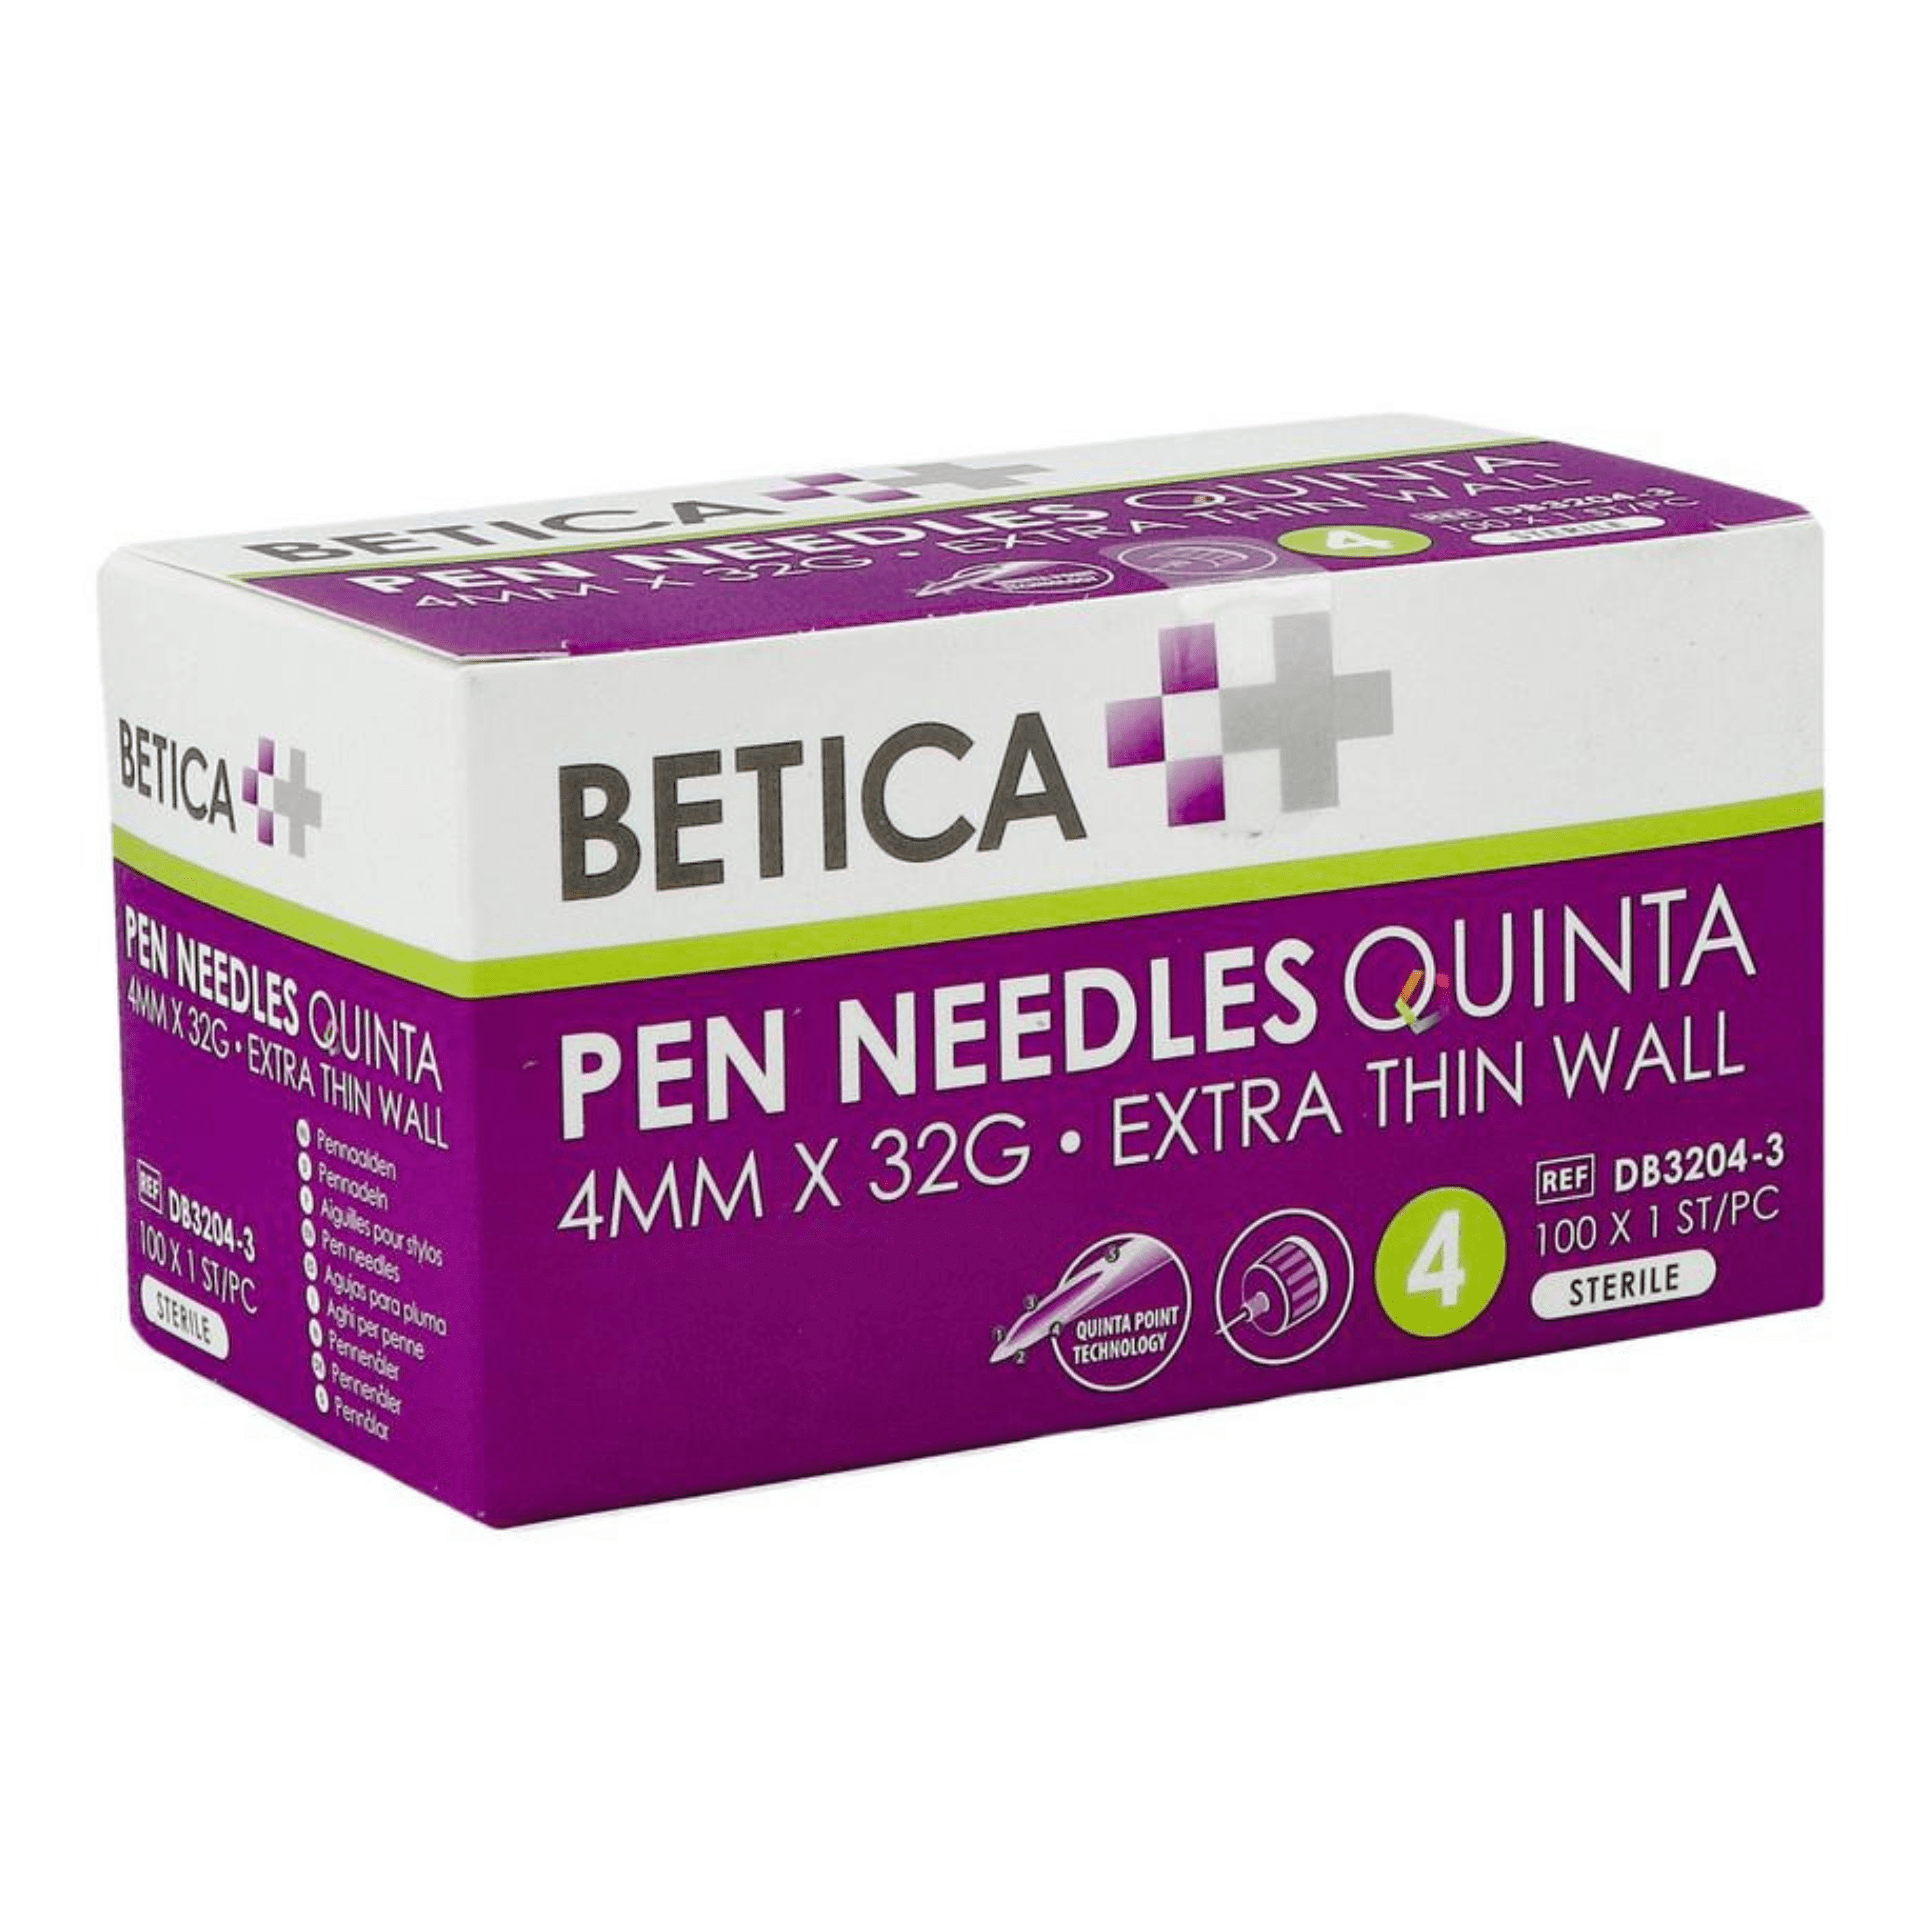 Betica Pen Needles Quinta 4 mm x 32 g 